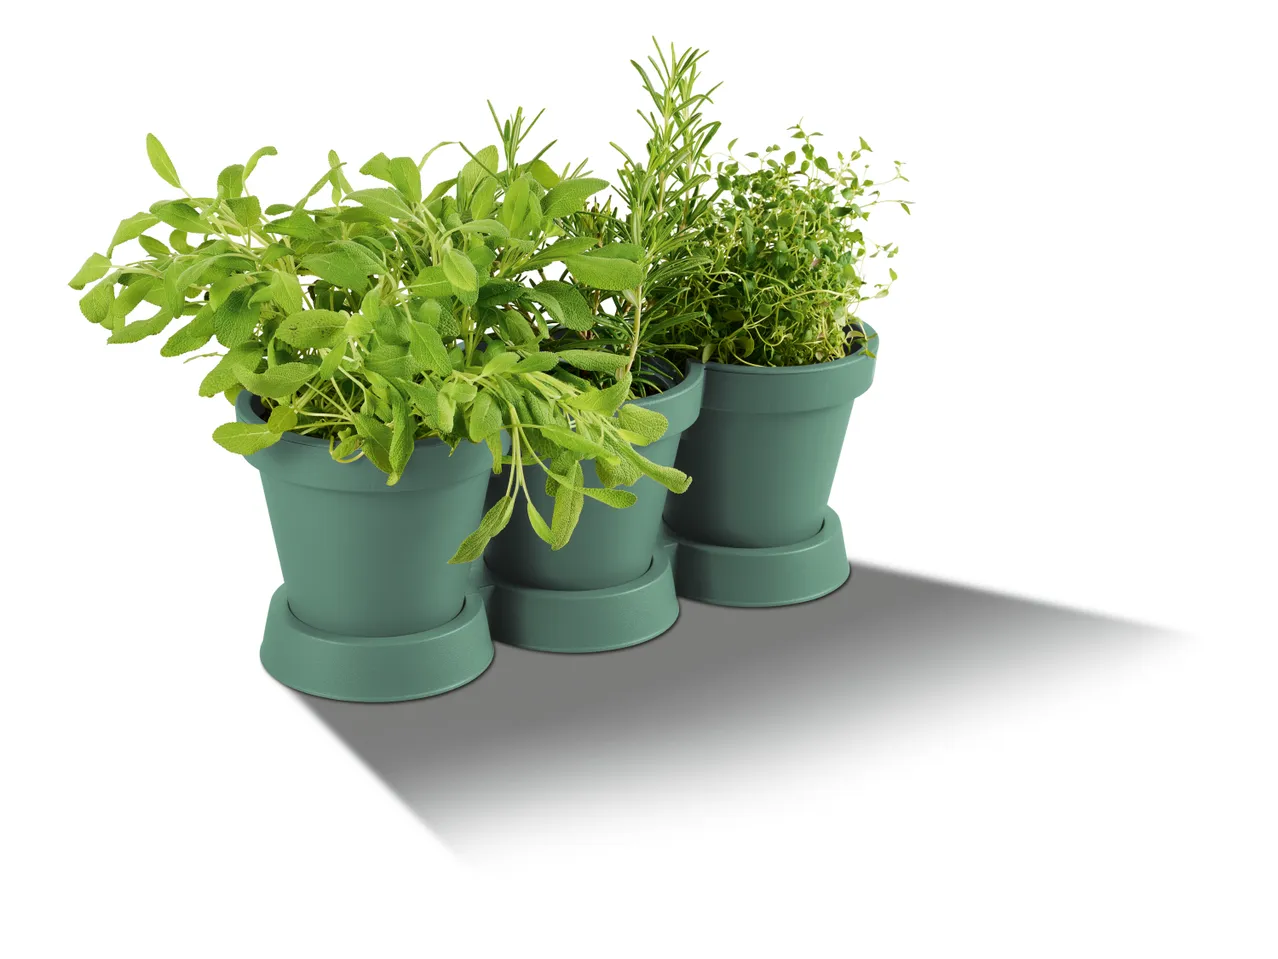 Vaso triplo per piante , prezzo 3.99 EUR 
Vaso triplo per piante 
- 100% plastica ...